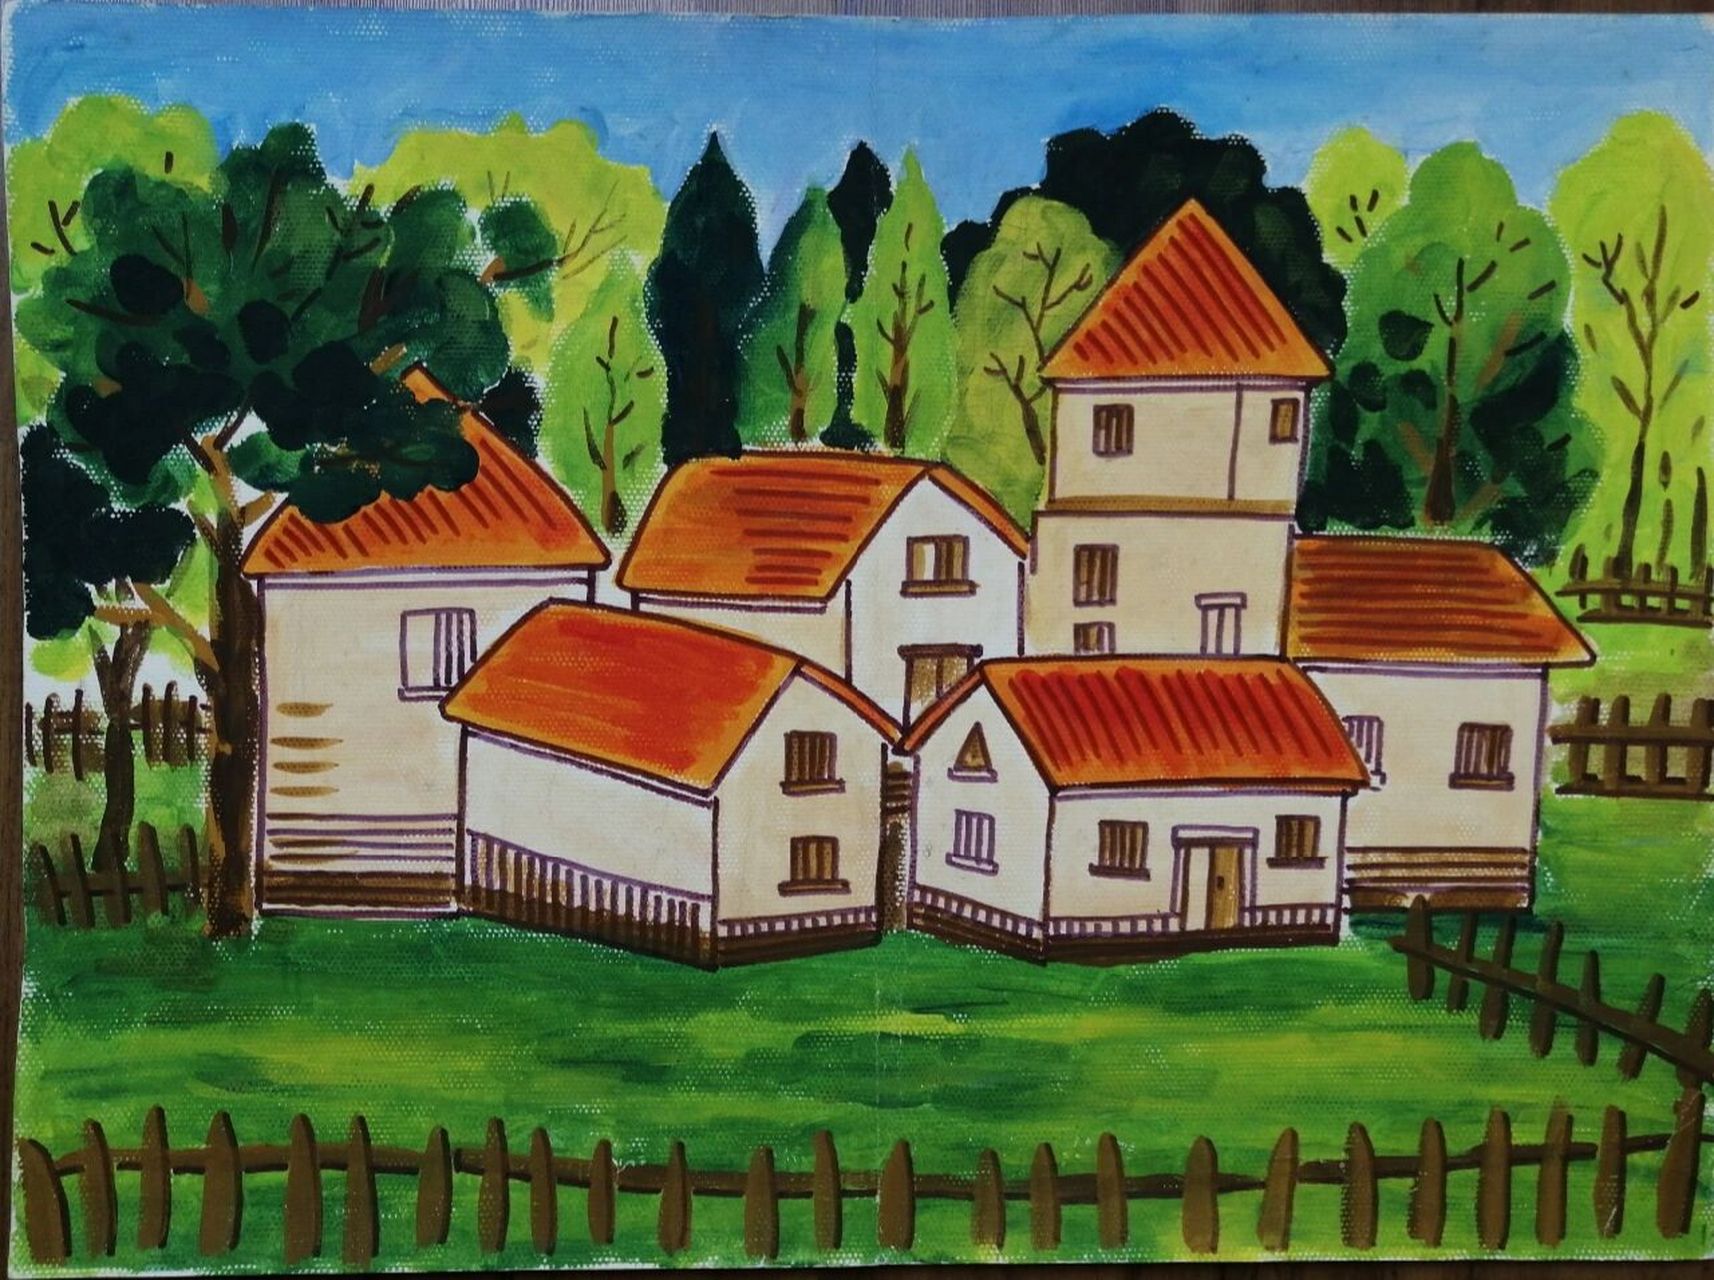 儿童水粉画—美丽乡村 先画水粉,再用水彩笔勾线,小房子和周围环境的